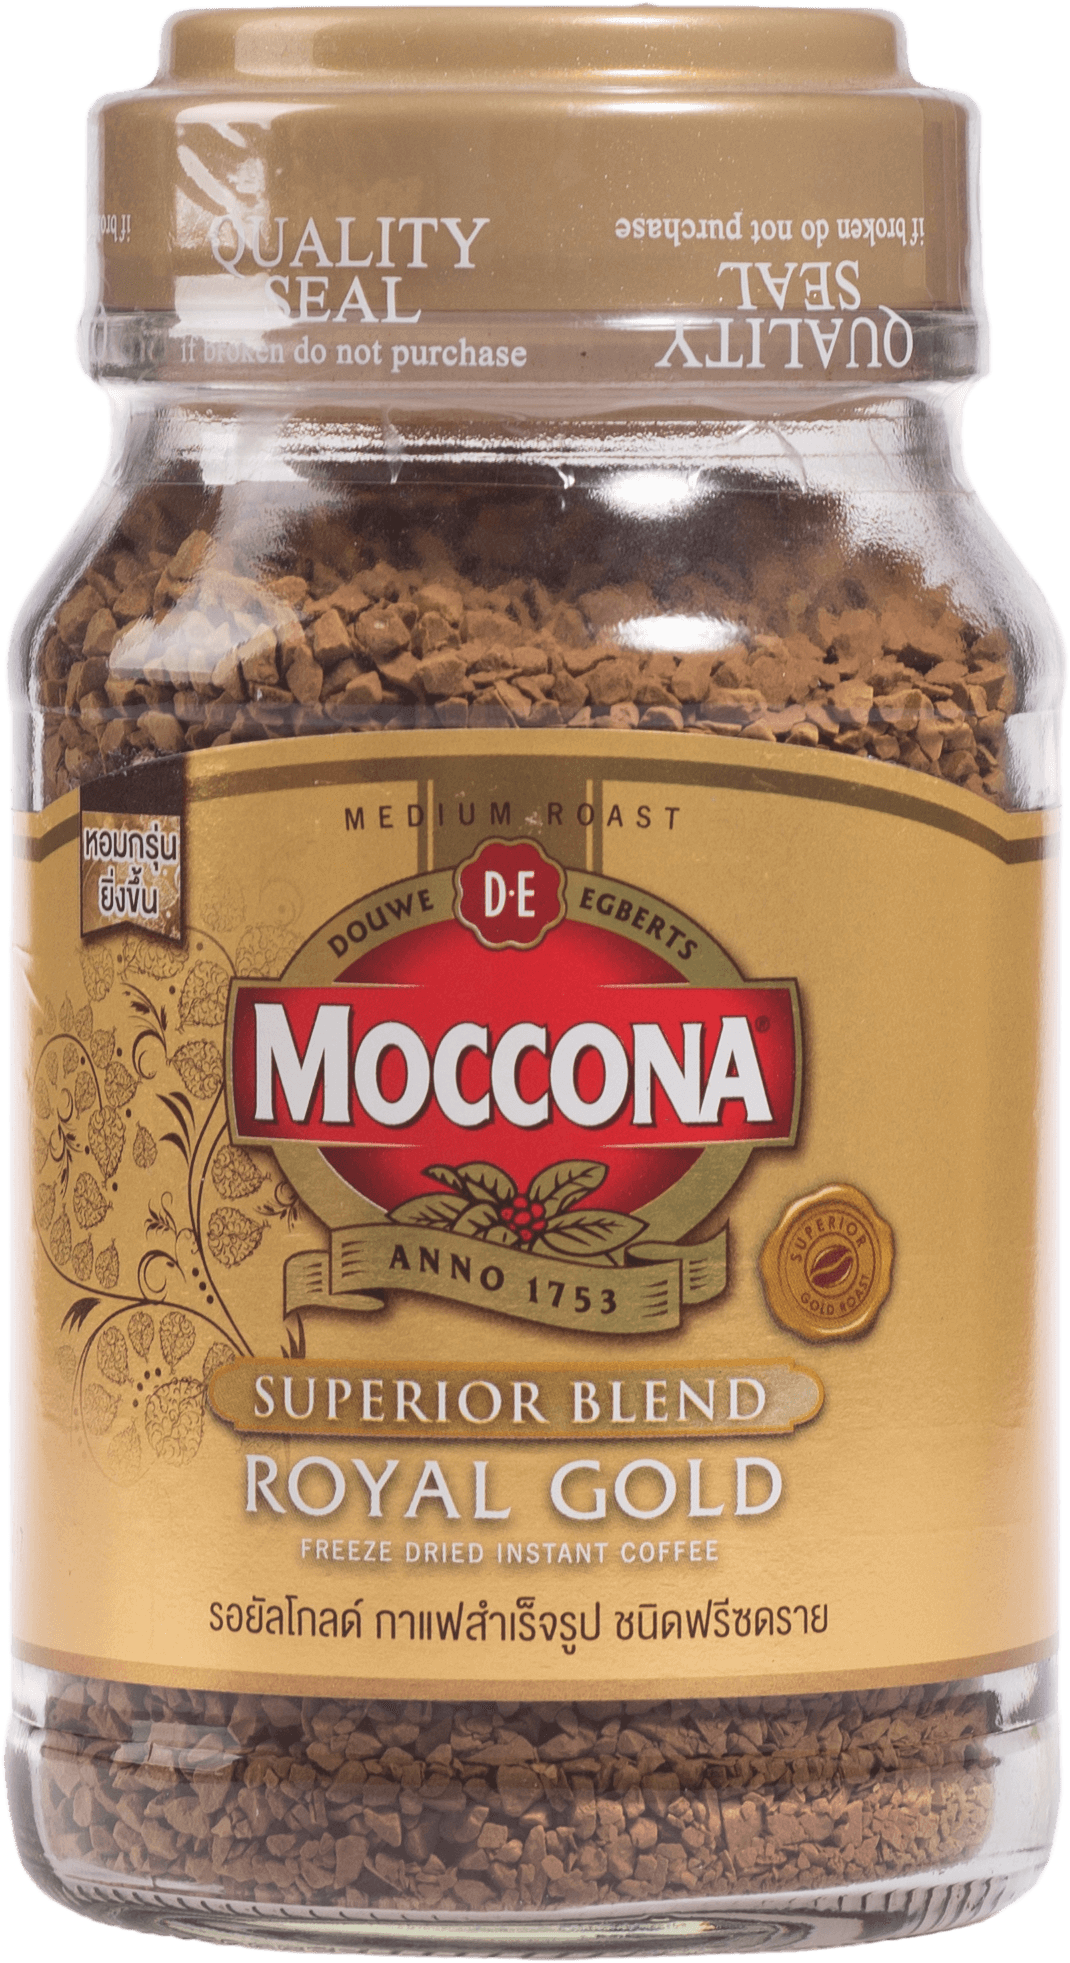 กาแฟสำเร็จรูปรอยัลโกลด์ ฟรีซดราย Moccona Classic Medium Roast 200 กรัม